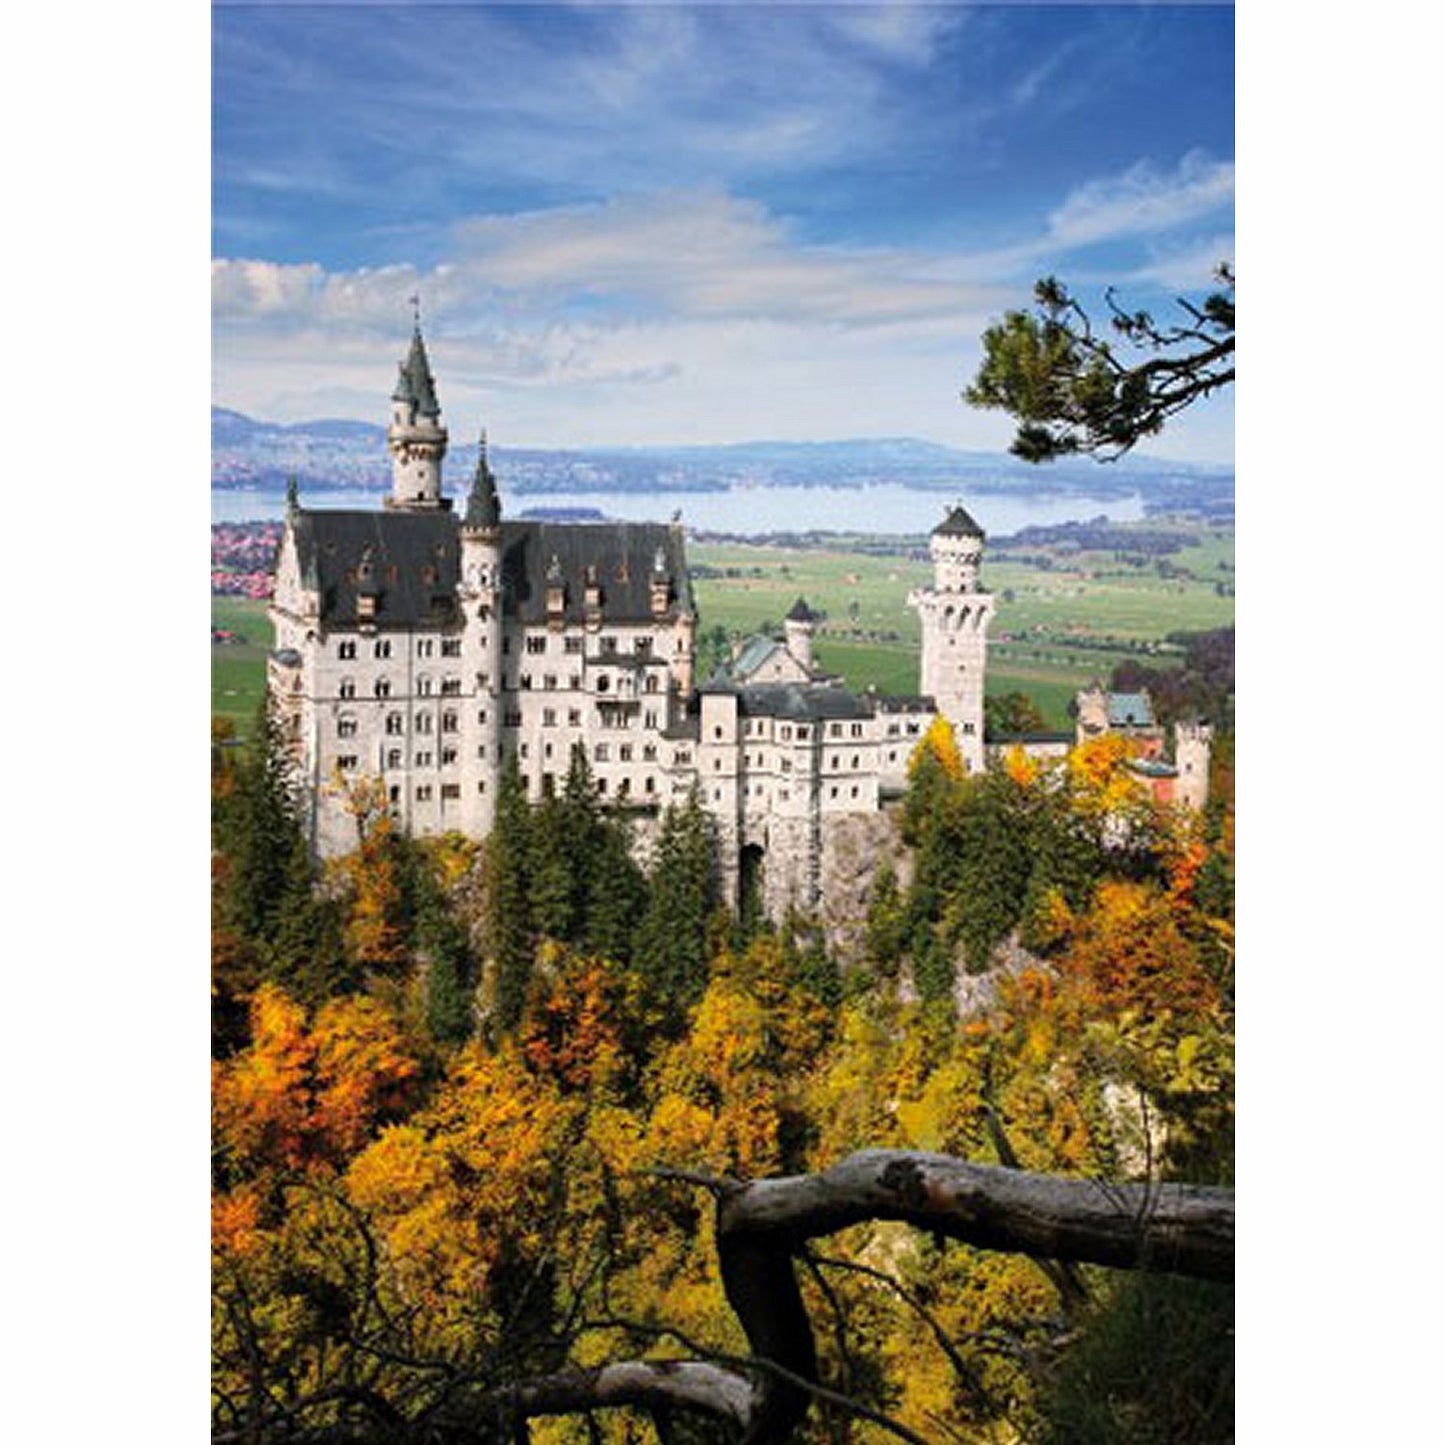 Dtoys - Landscapes : Neuschwansstein Castle - 1000 Piece Jigsaw Puzzle